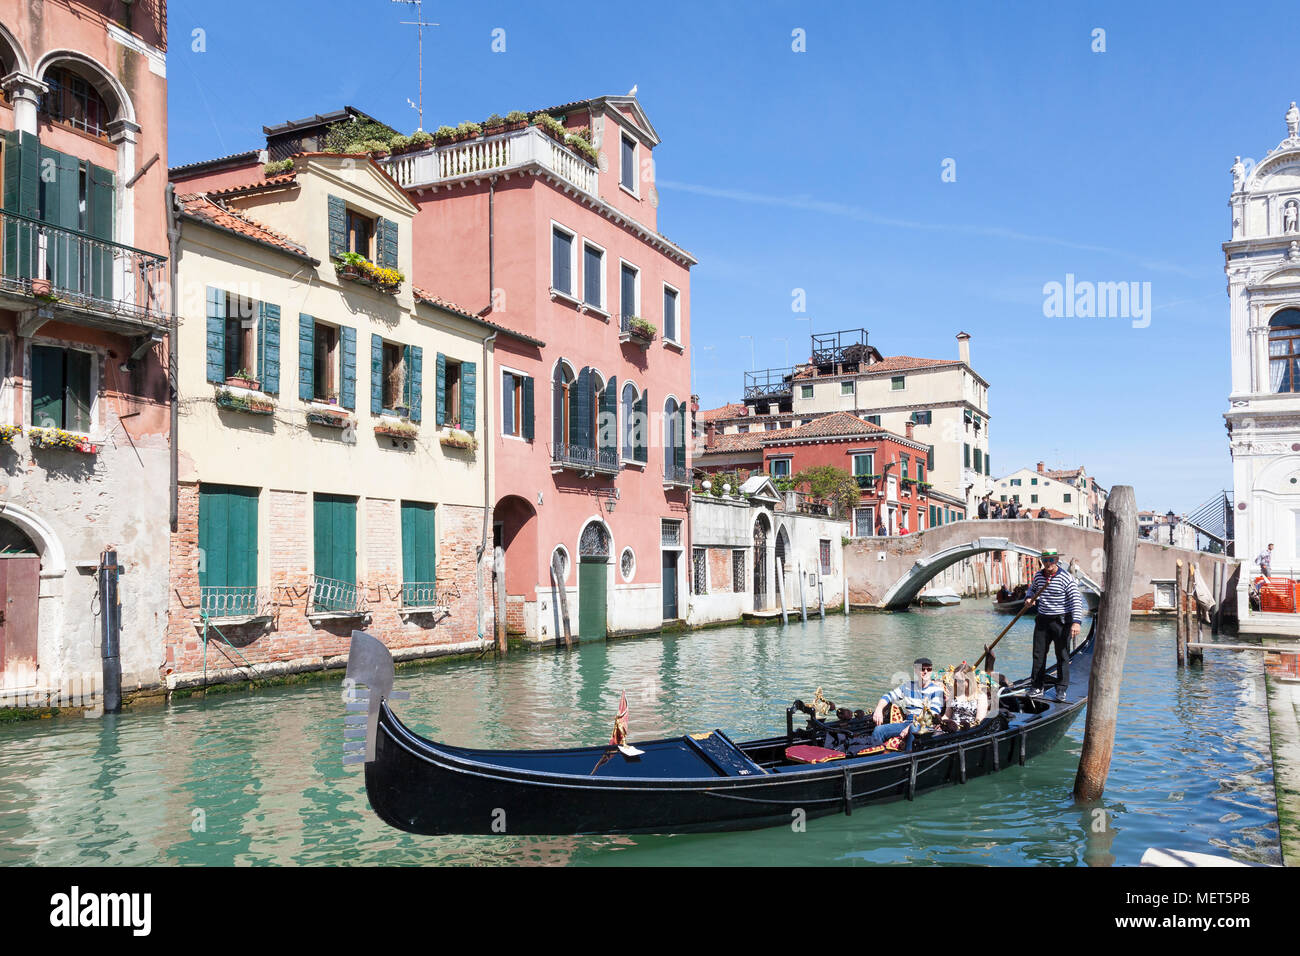 Les touristes profitant d'une promenade en gondole avec un gondolier, Ponte Cavallo, Cannaregio, Venise, Italie sur une journée de printemps ensoleillée Banque D'Images